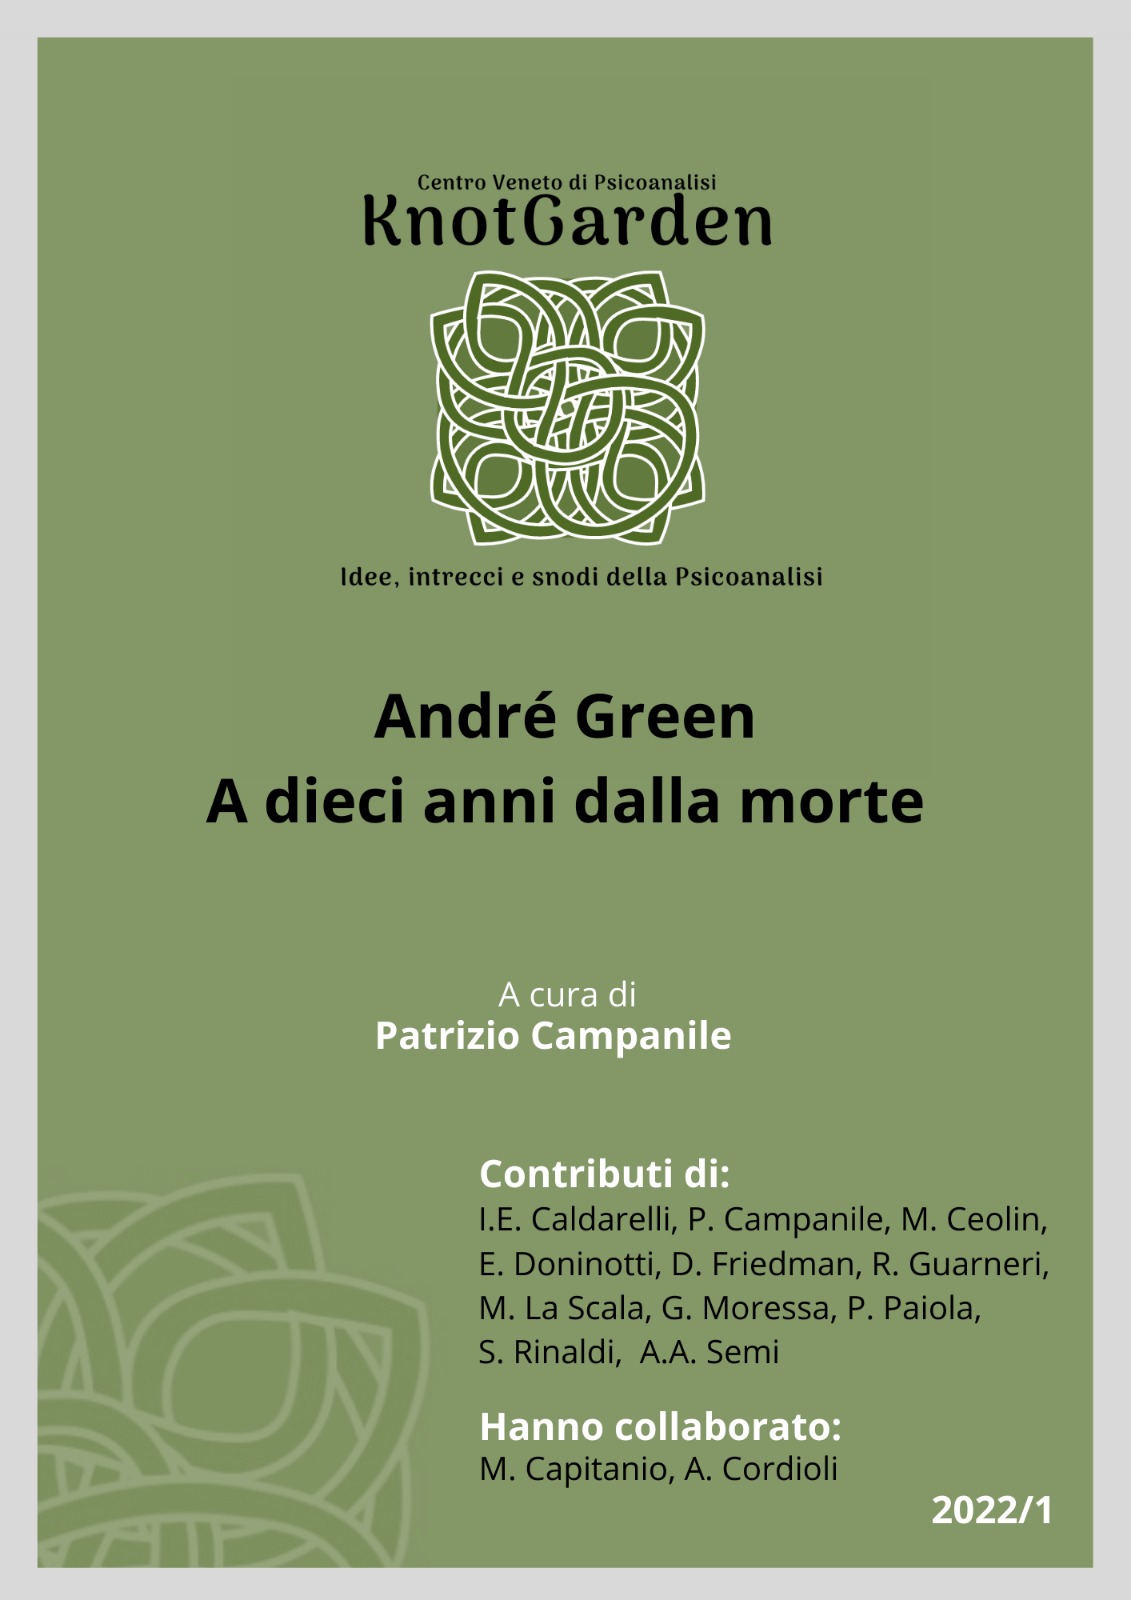 copertina del numero 2022/1 KnotGarden Andrè Green